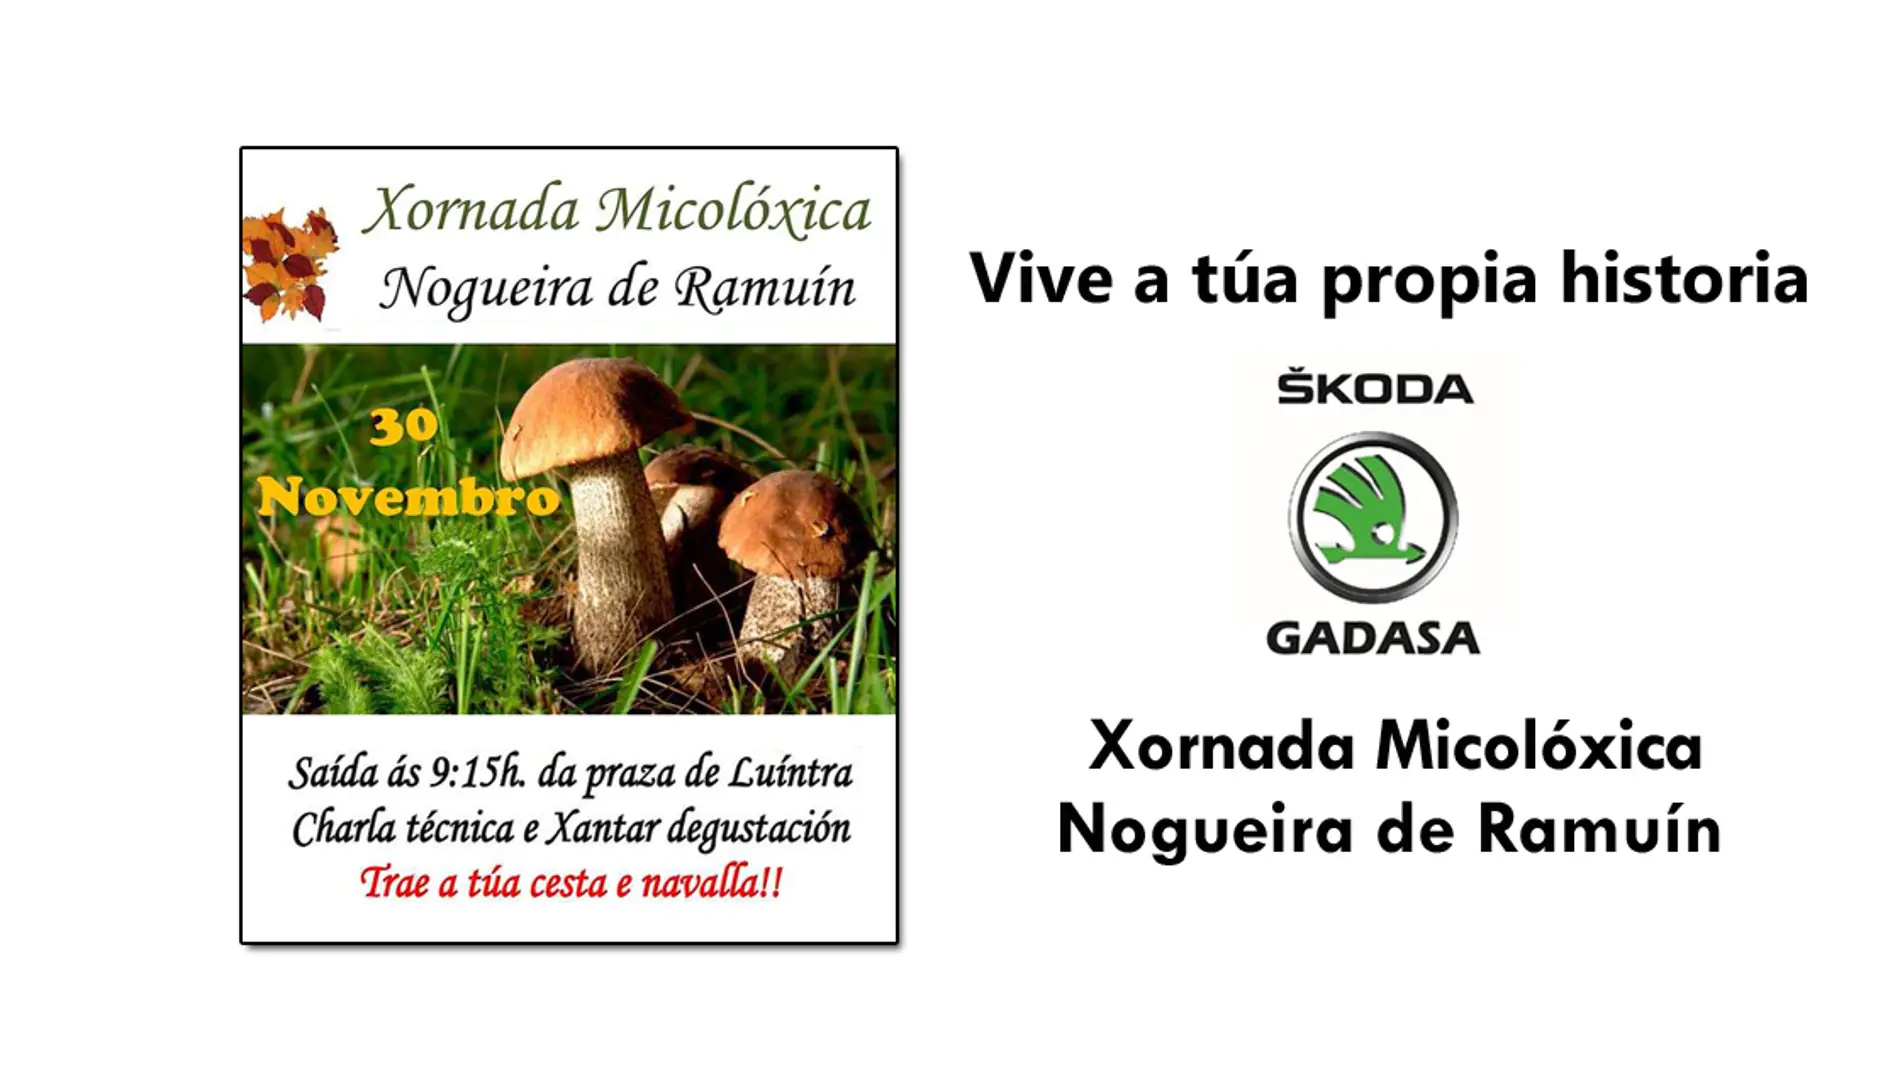 Xornada Micolóxica Nogueira de Ramuín